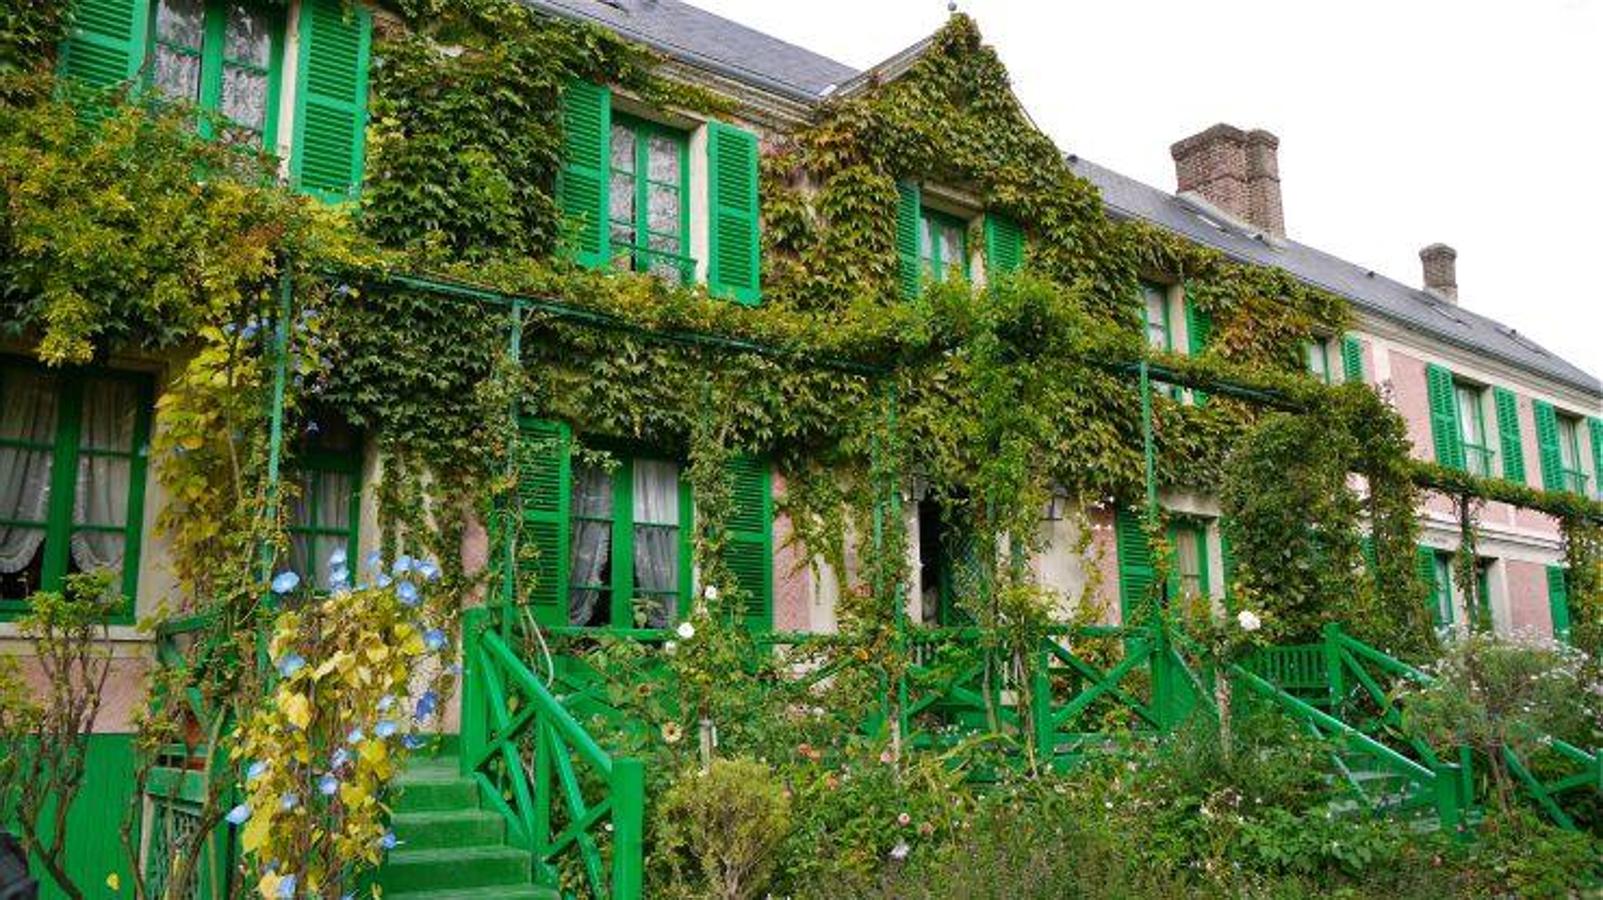 Giverny (Francia) | Se encuentra aquí el Jardín de Monet y el Clos Normand, la casa donde vivió Claude Monet desde 1883 hasta su muerte en 1926. Es uno de los parques más bonitos y preciosos del país, que inspiró al autor su célebre cuadro 'Nenúfares', icono del impresionismo.